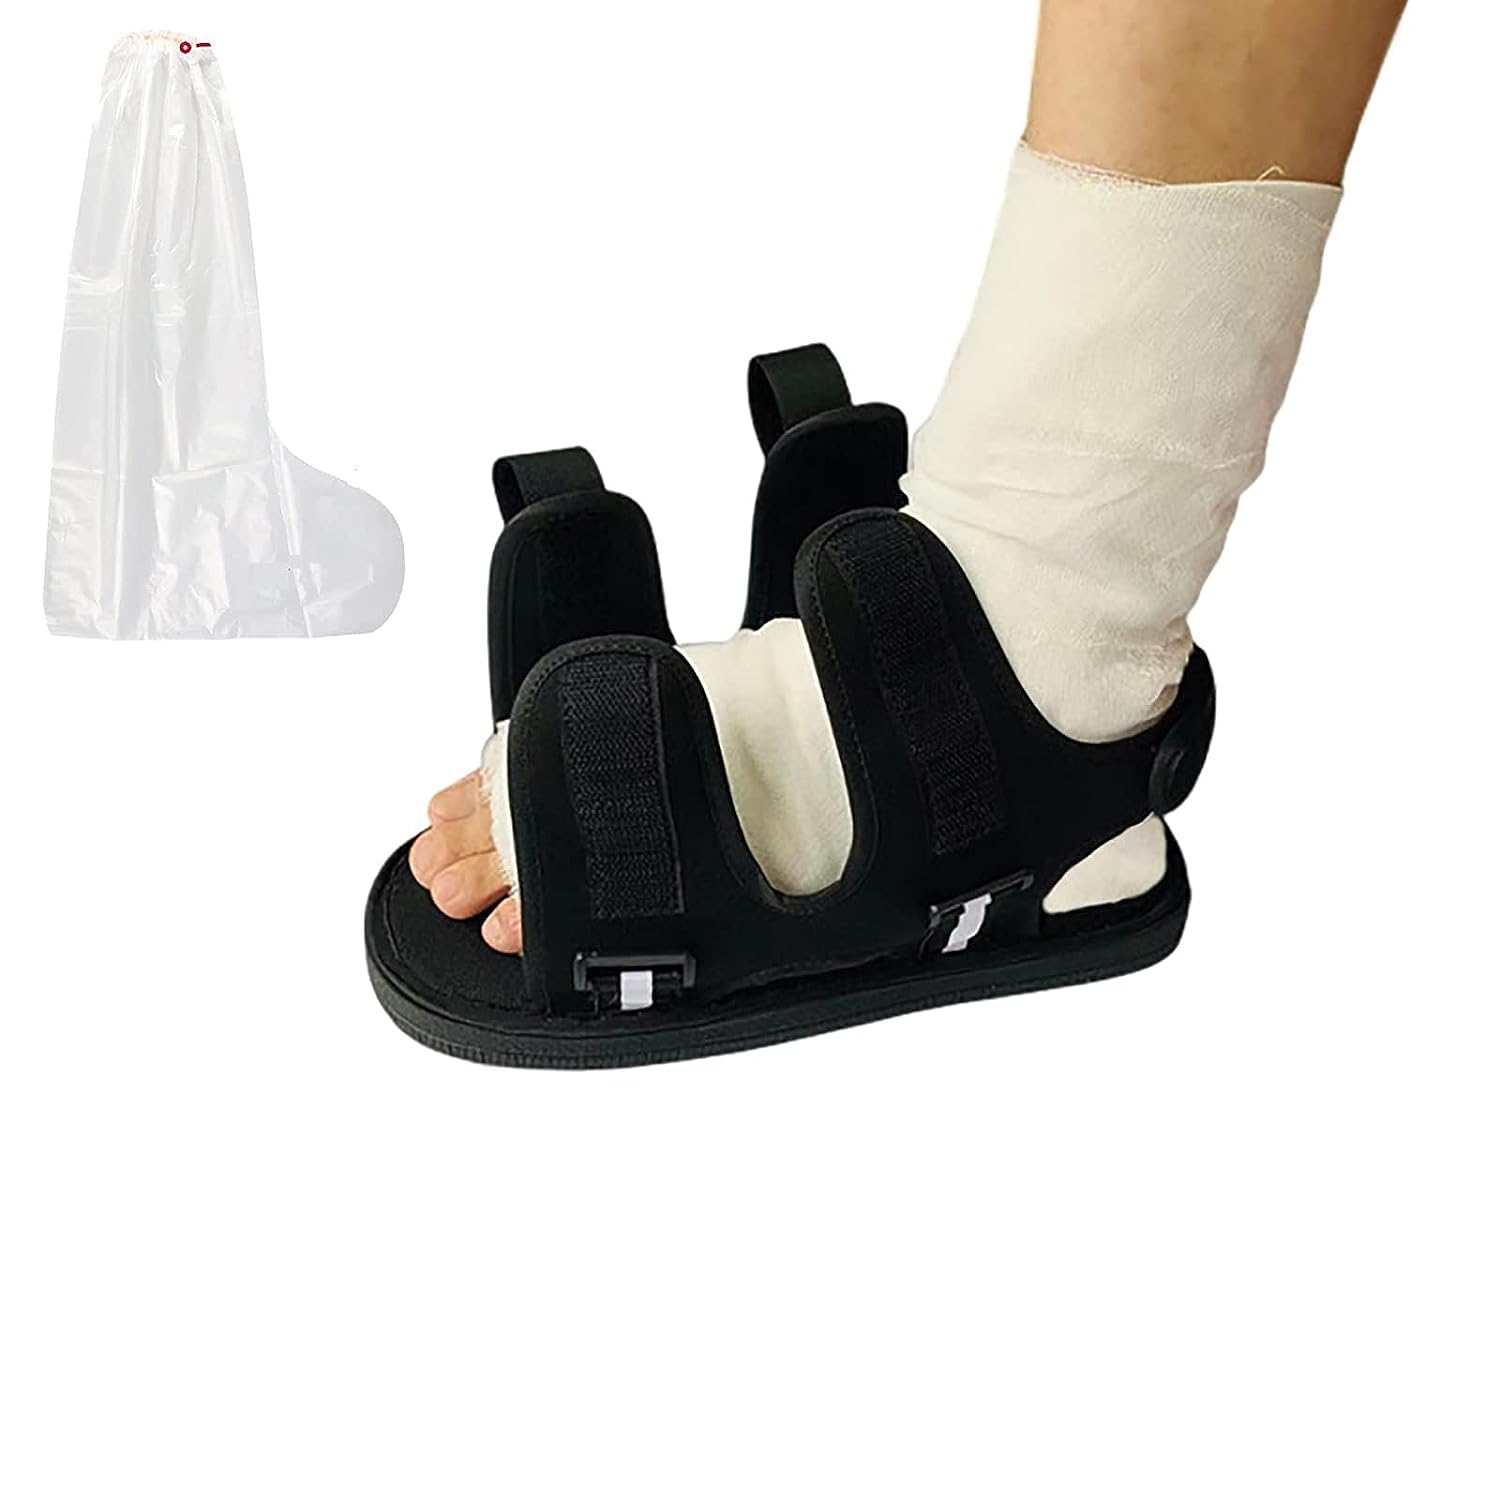 GREUS Post Op Shoe with Waterproof Leg Cast Cover, [...]